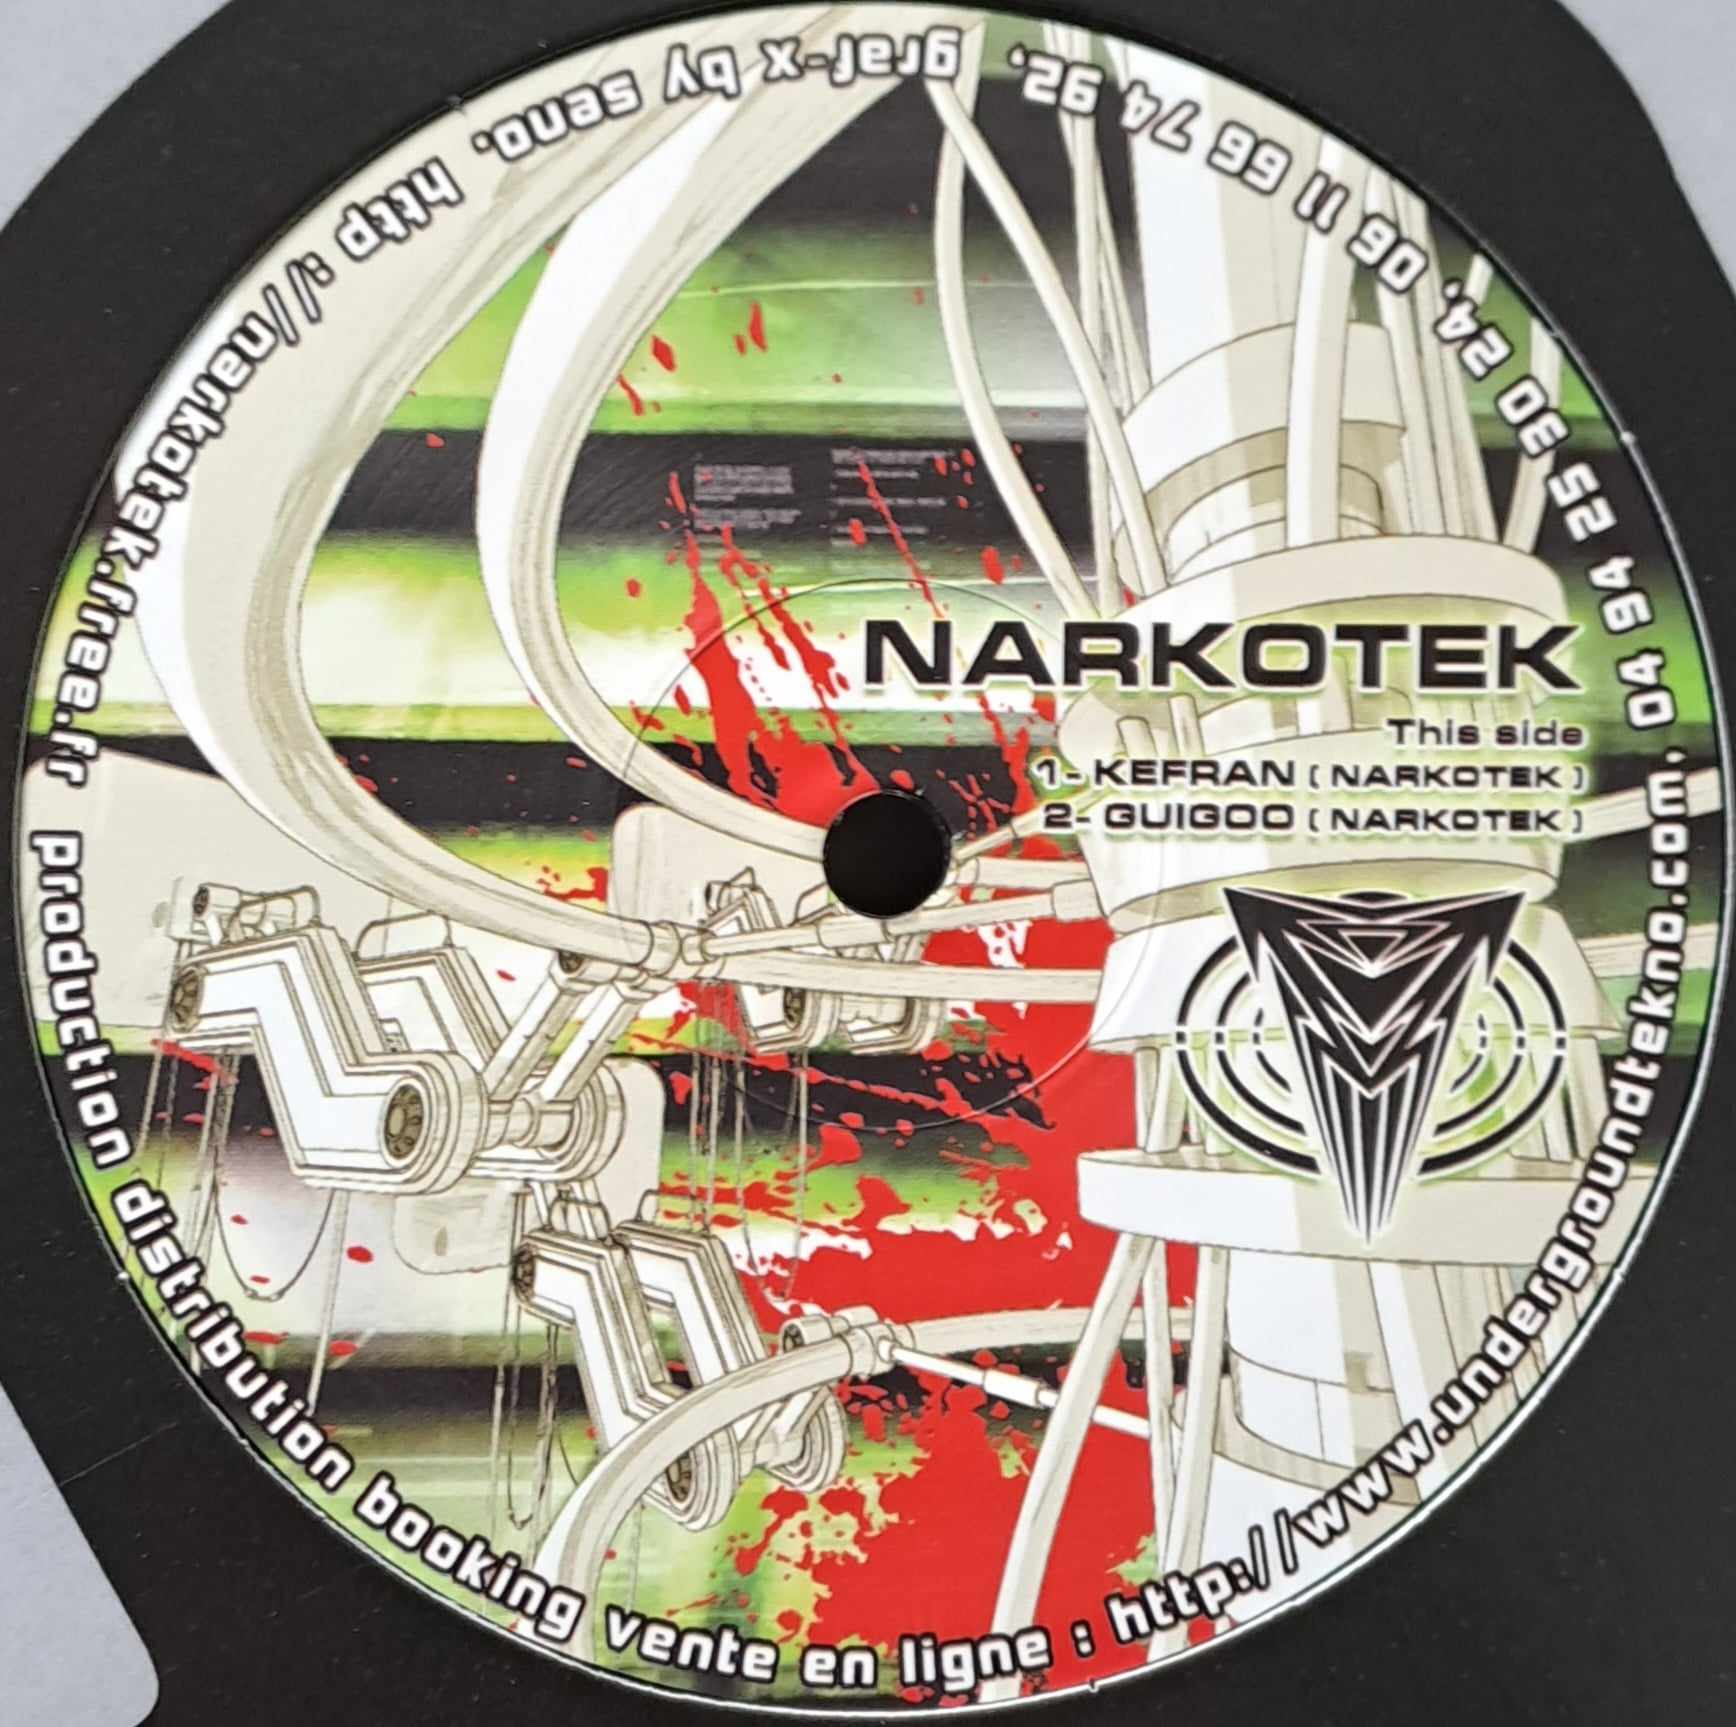 LSDF Vs Narkotek (RP2023) (toute dernière copie en stock) - vinyle freetekno